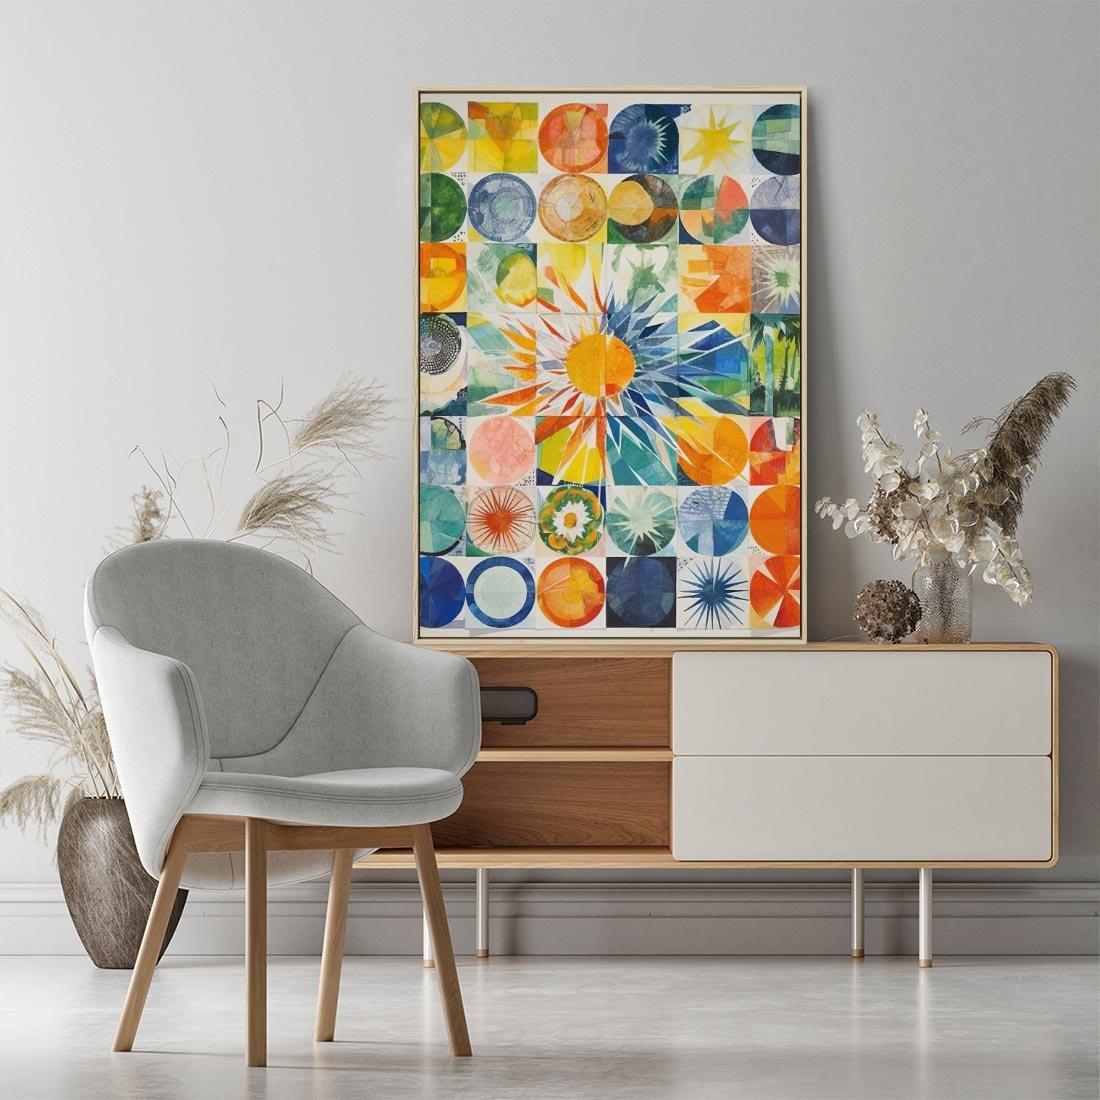 Obraz w ramie 50x70 - Rozkwitające Wzory Abstrakcji - abstrakcyjny obraz, mnogość kolorów - rama drewno